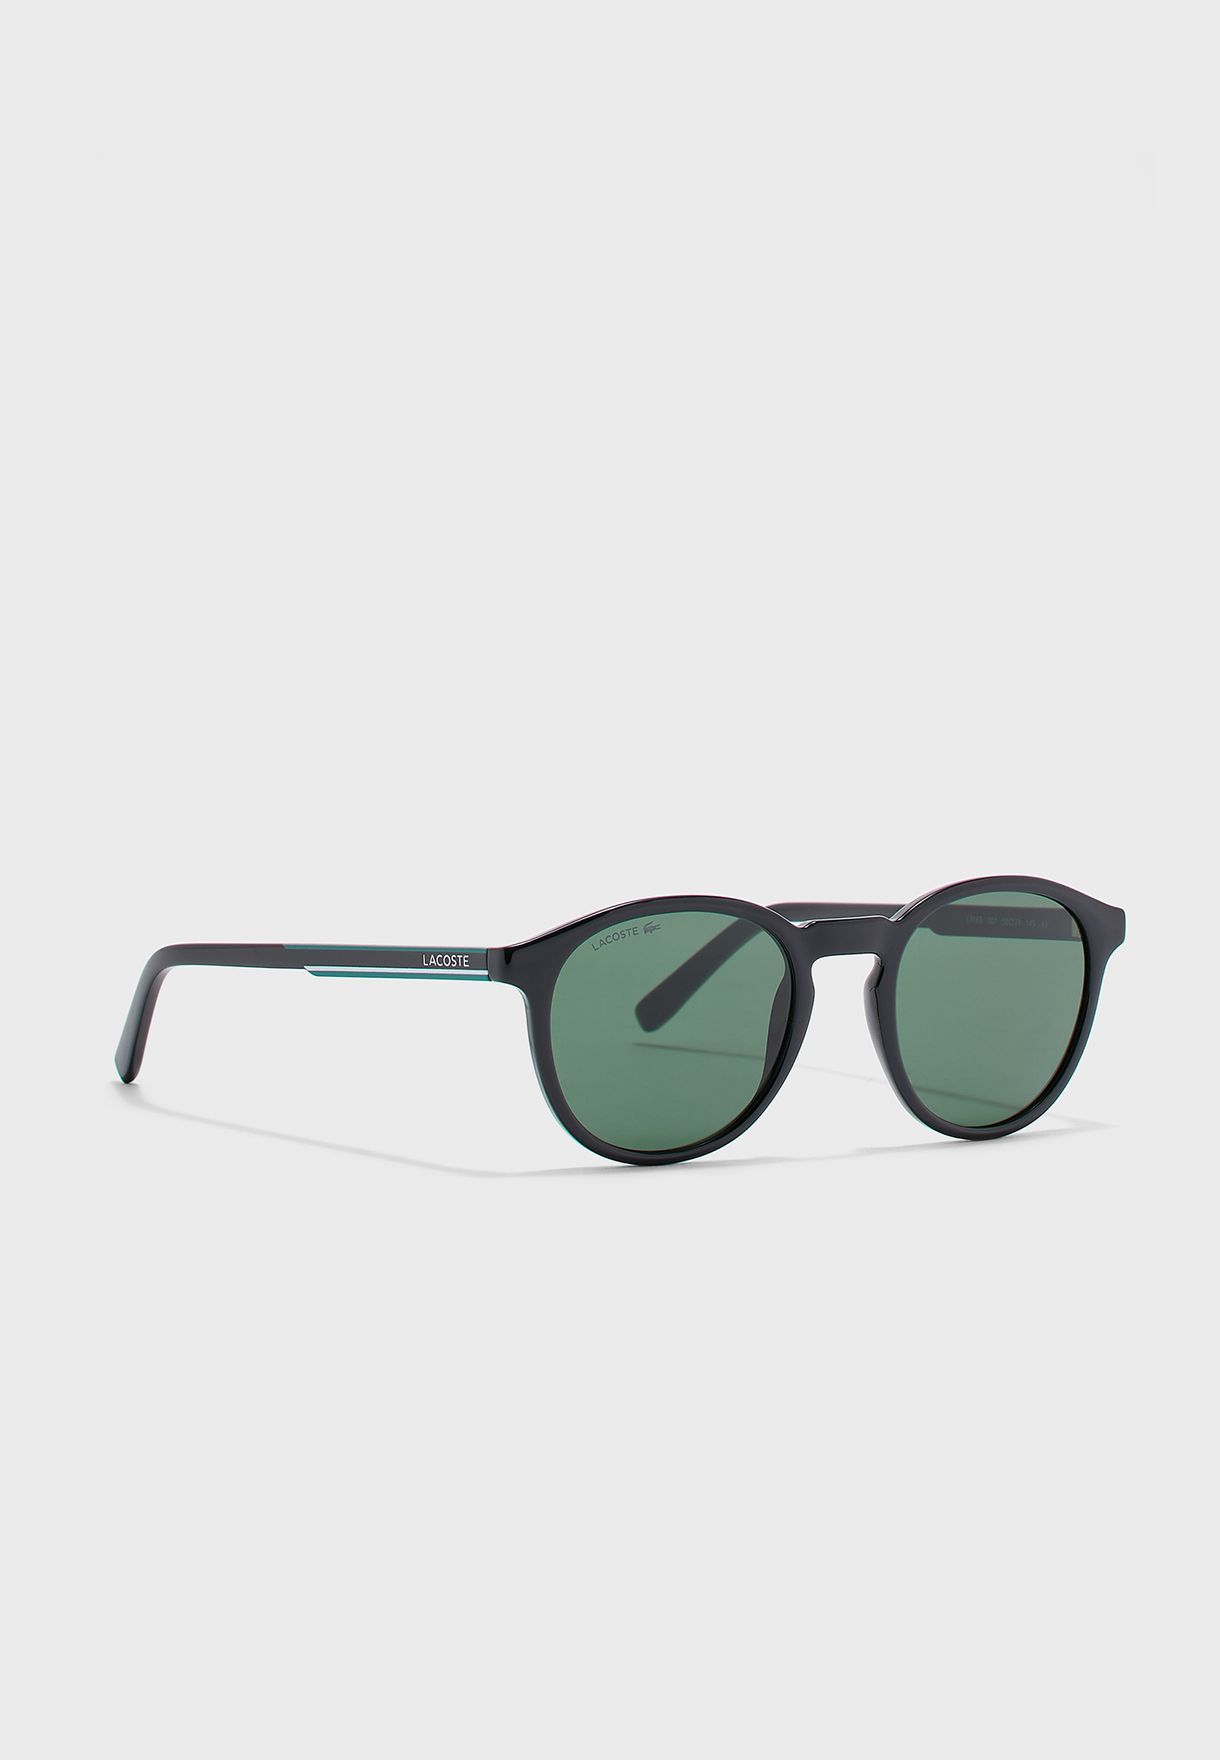 lacoste black sunglasses